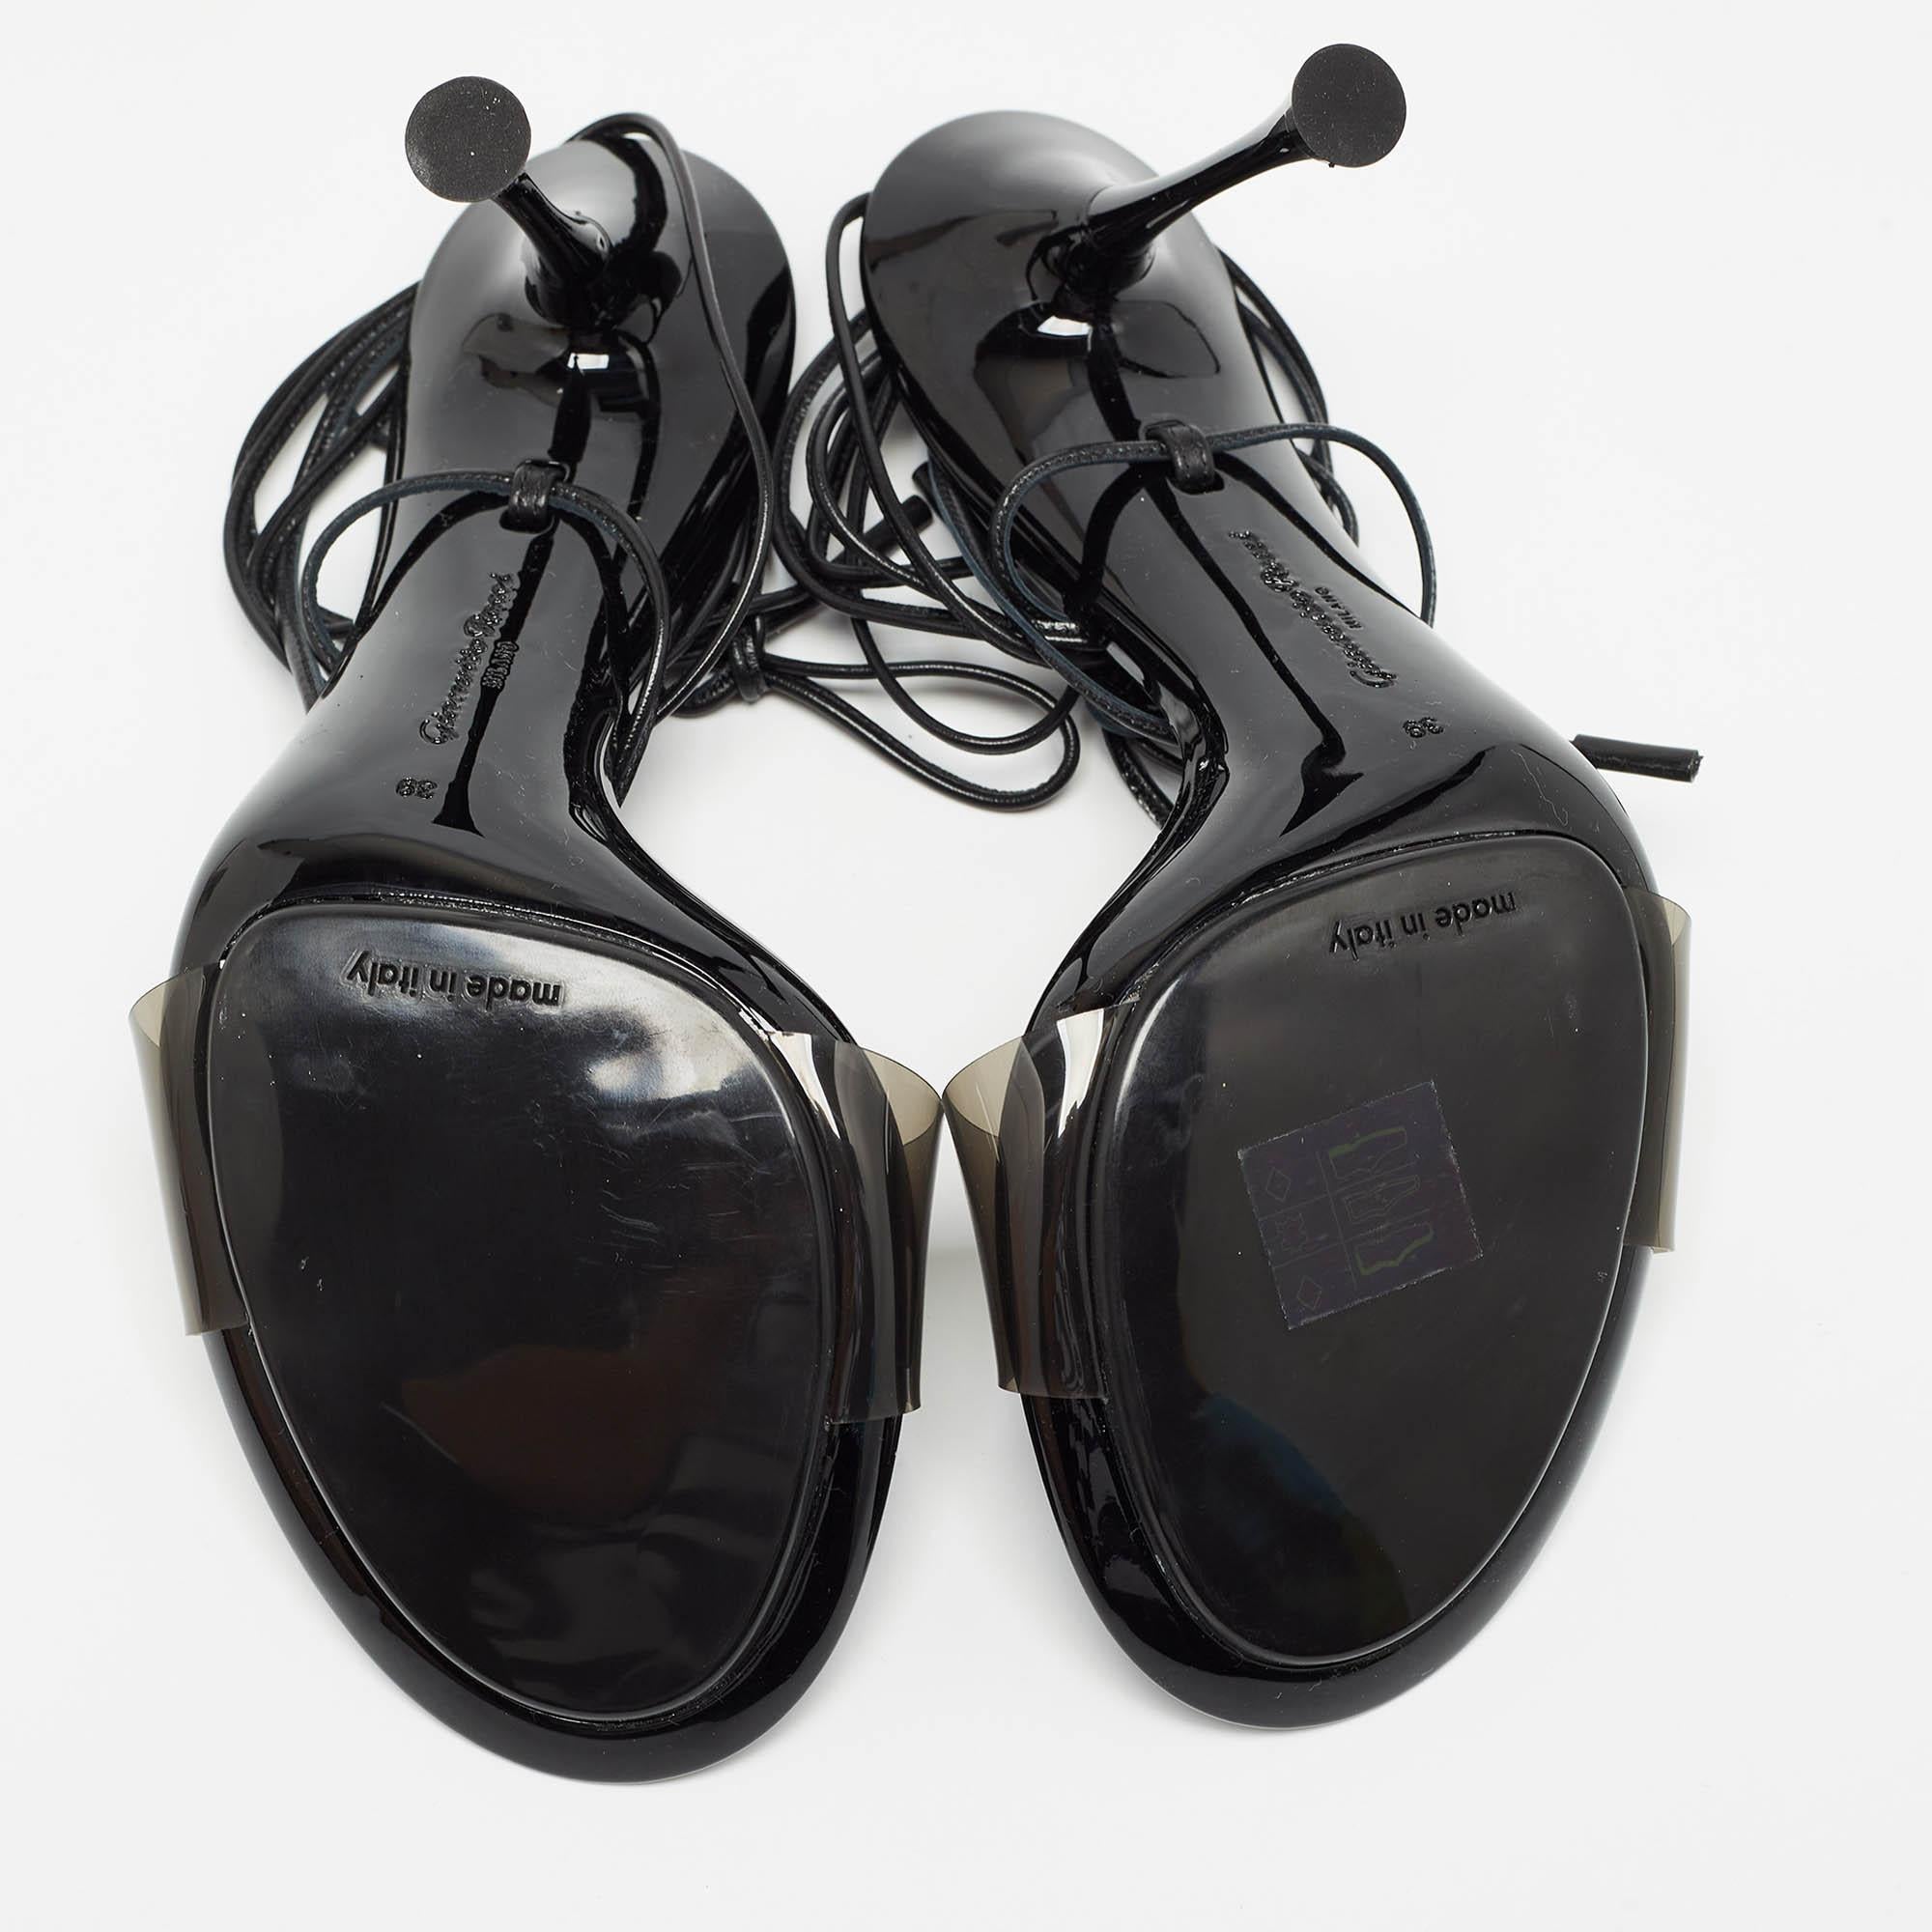 Gianvito Rossi Black PVC Spice Sandals Size 39 1